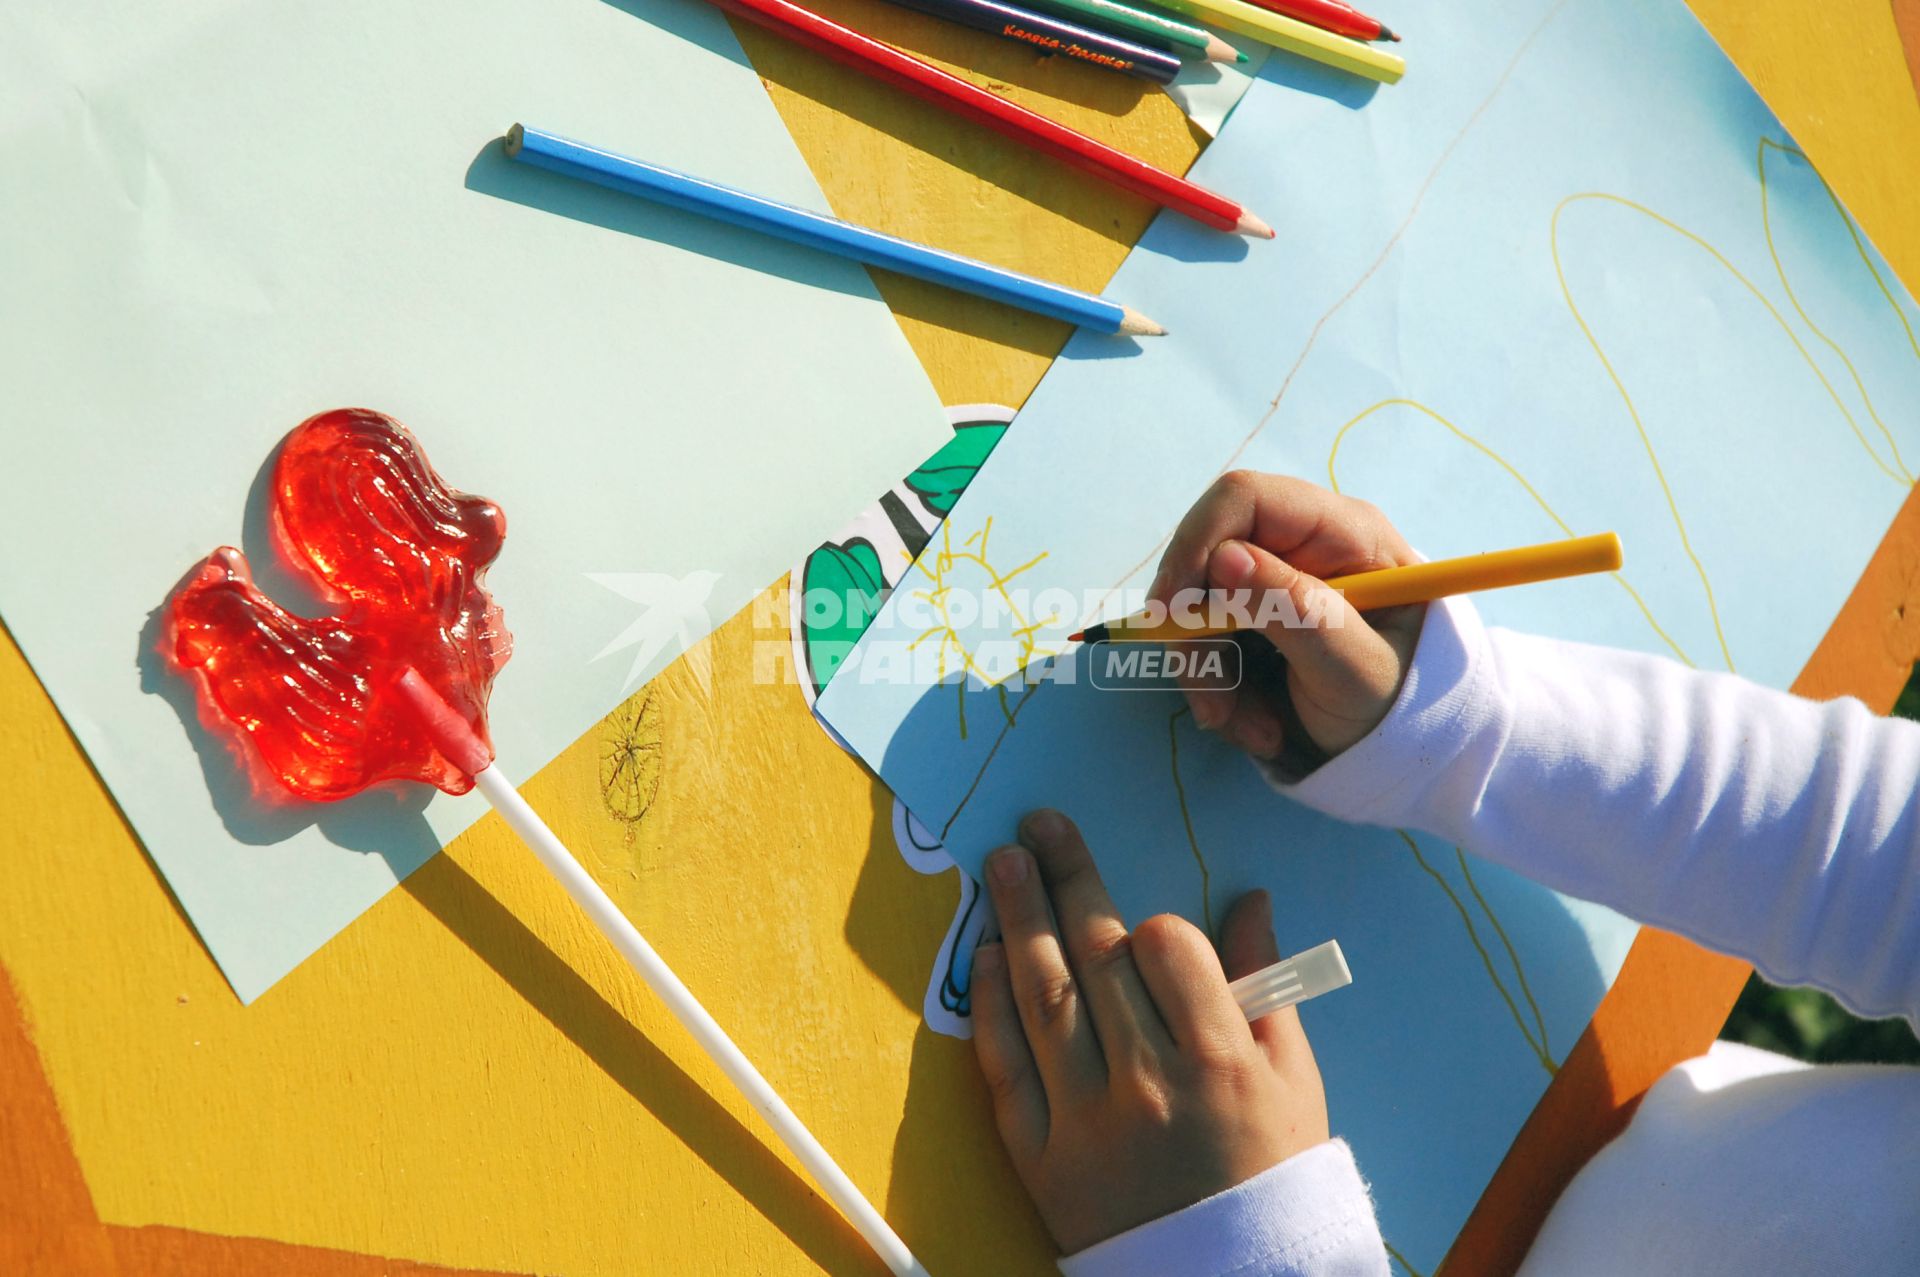 Руки рисующей девочки, цветные карандаши и леденцовый петушок на палочке.